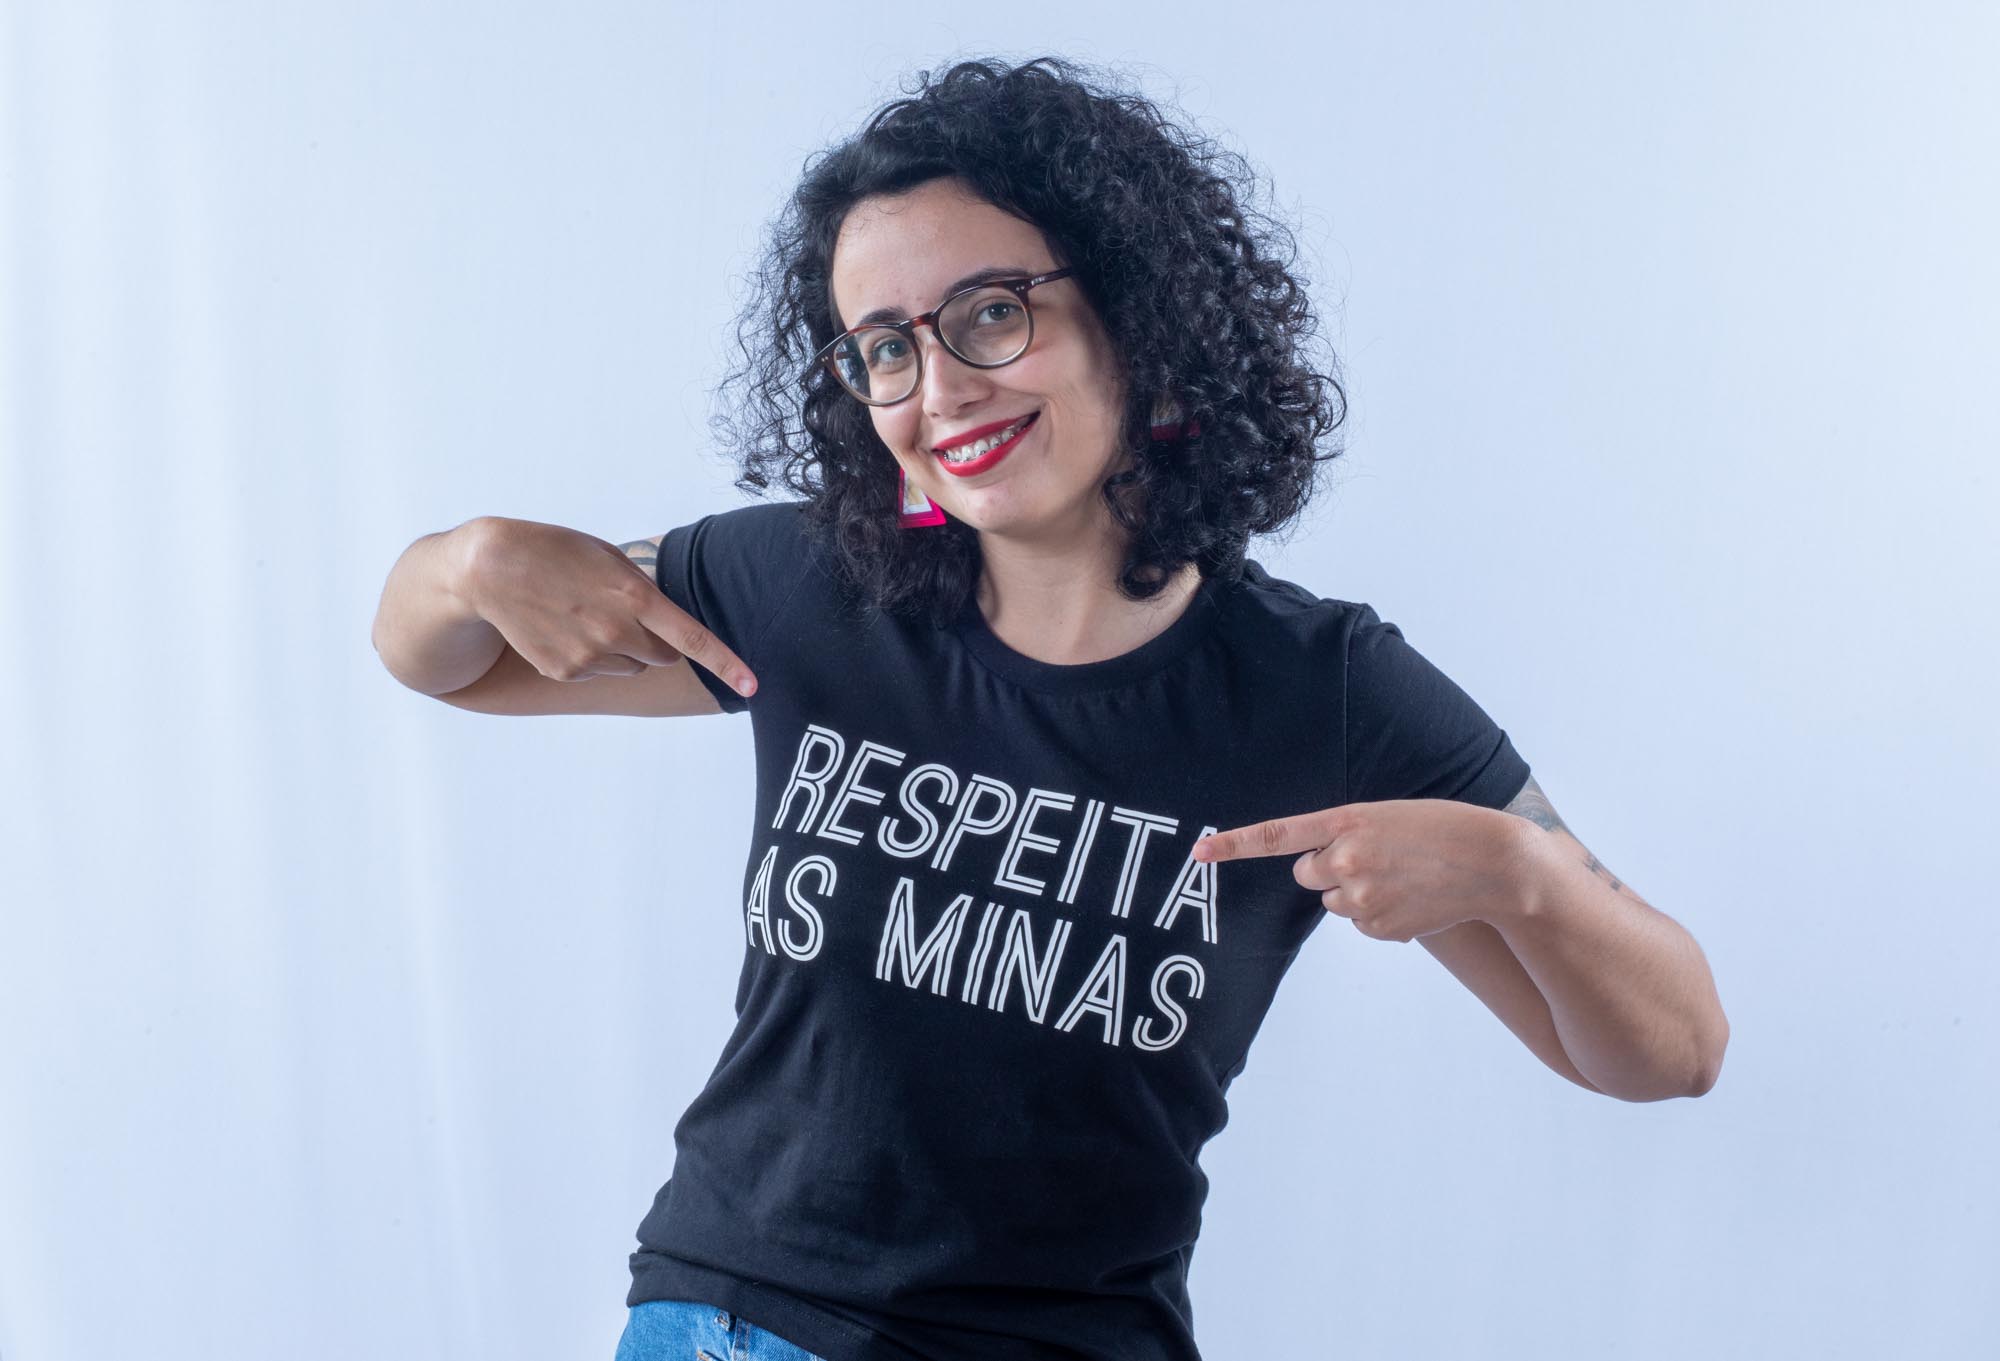 foto de uma mulher com camisa preta com letras brancas, onde se lê: "Respeita as minas"